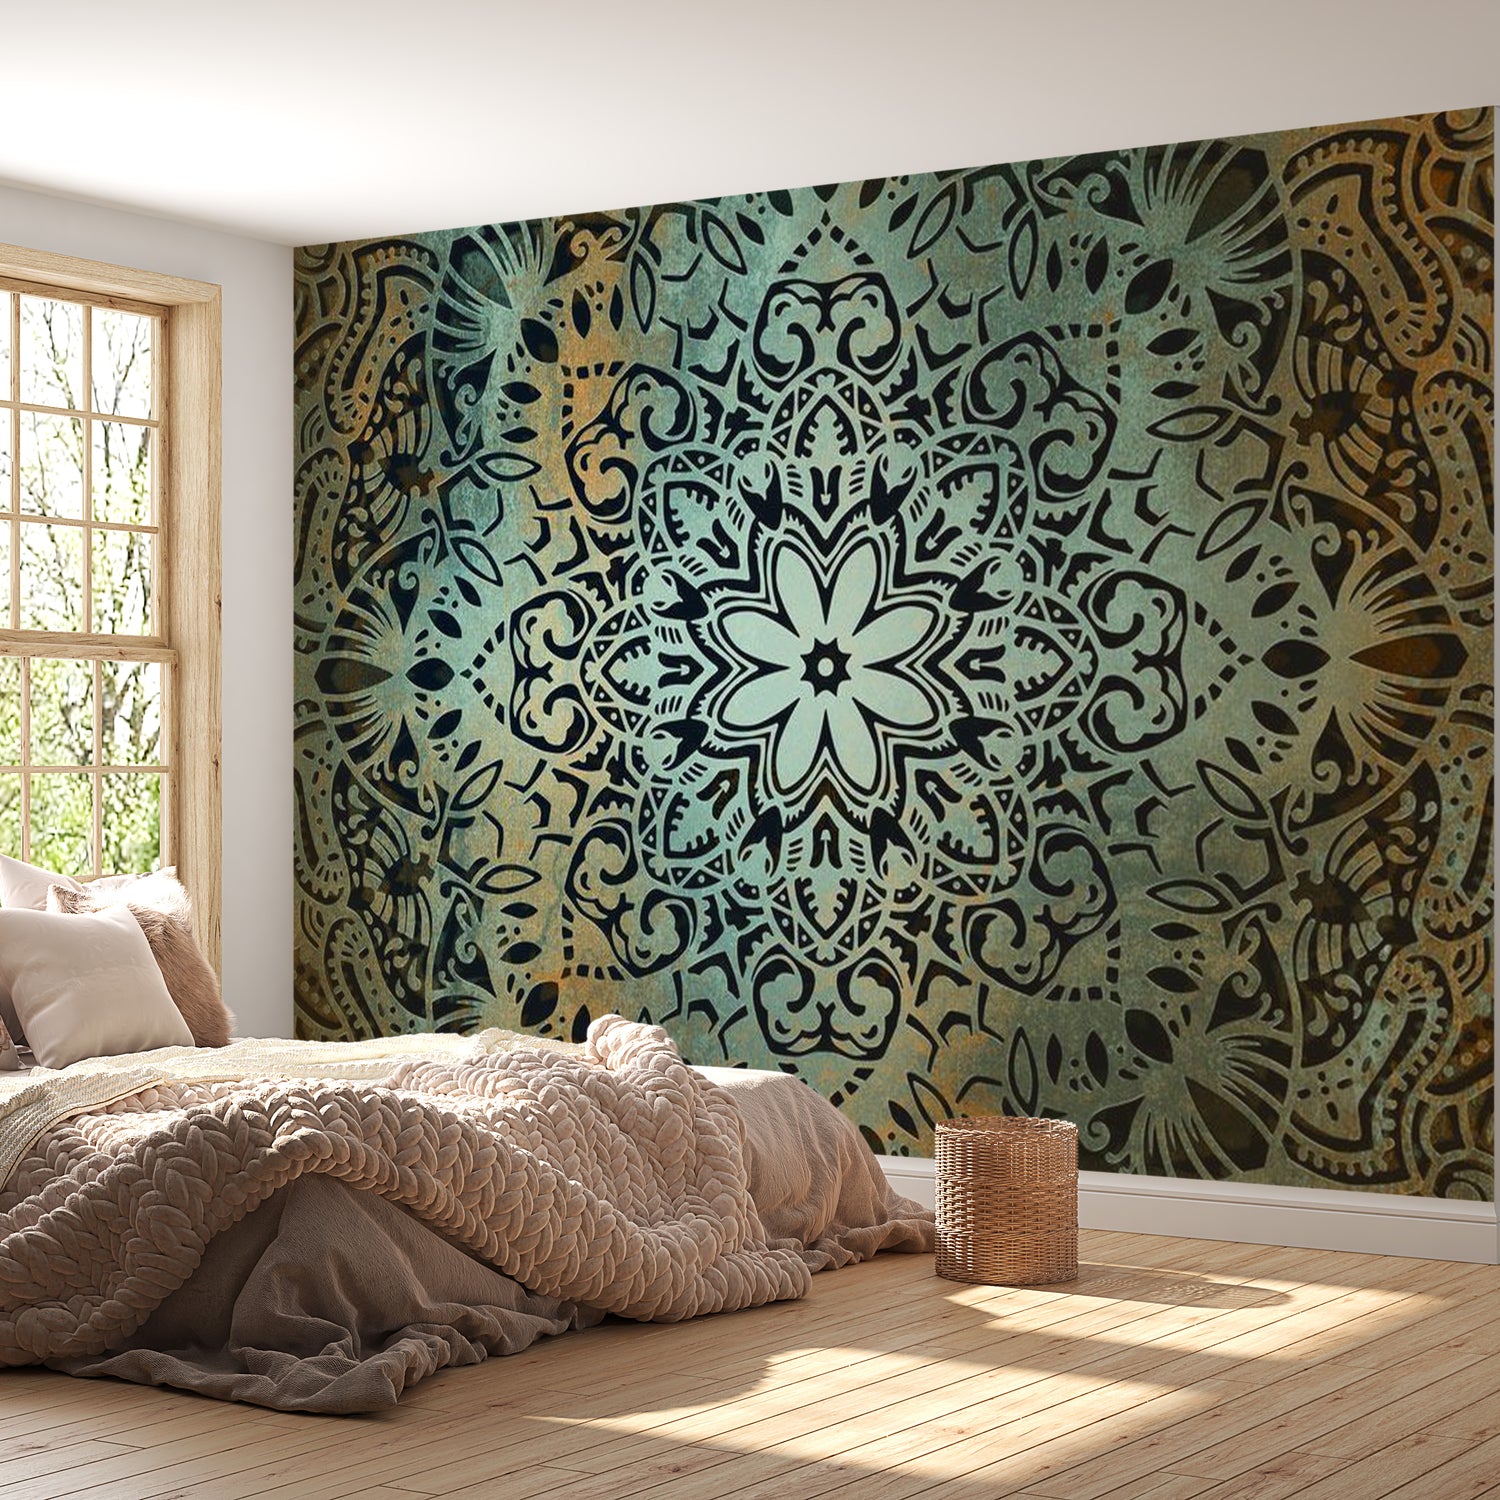 Mandala Wallpaper Wall Mural - Spiritual Flower